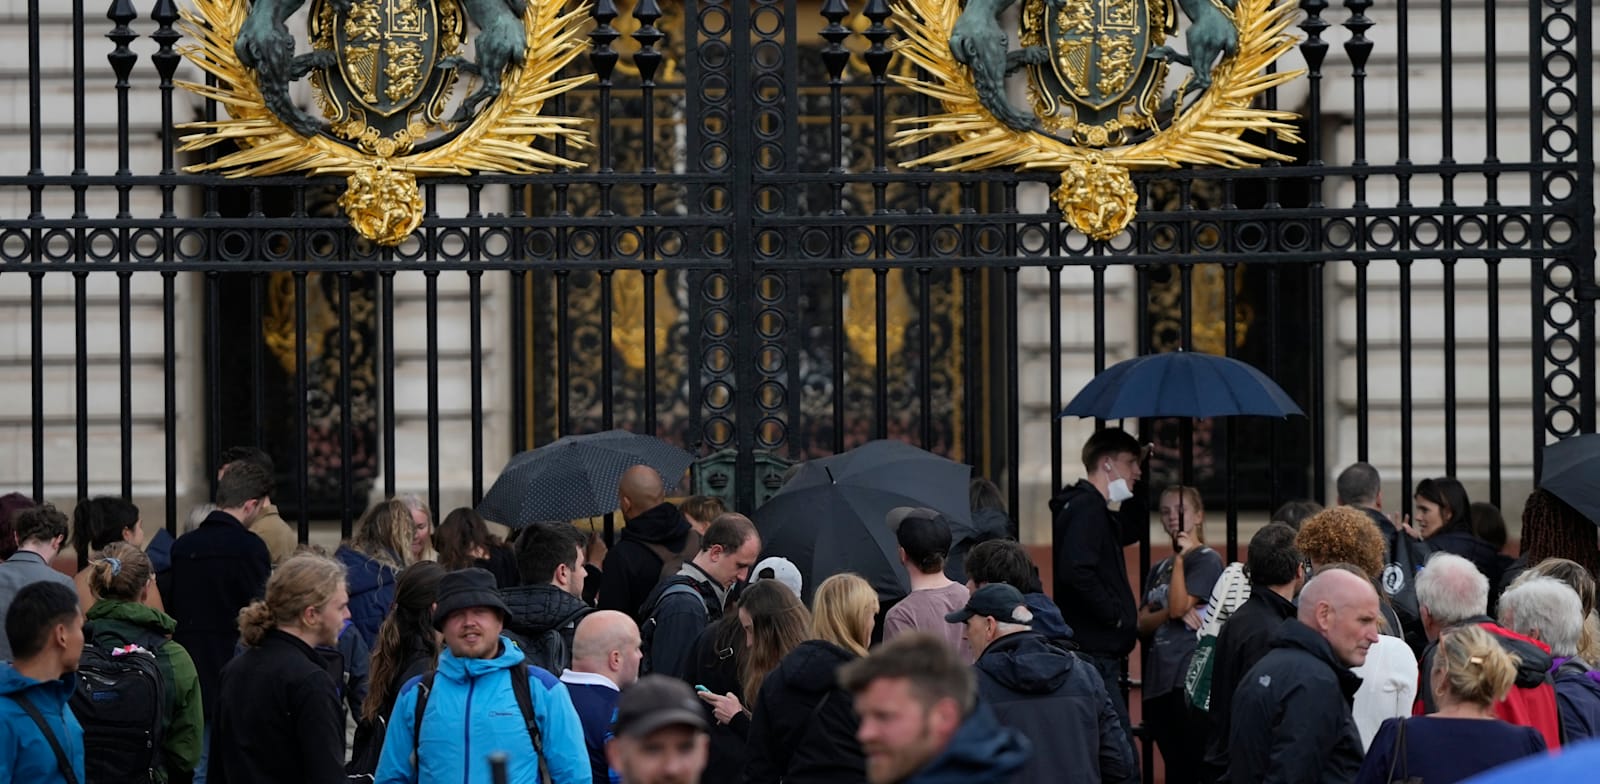 אנשים מתאספים מחוץ לארמון בקינגהאם, מוקדם יותר היום / צילום: Associated Press, Frank Augstein